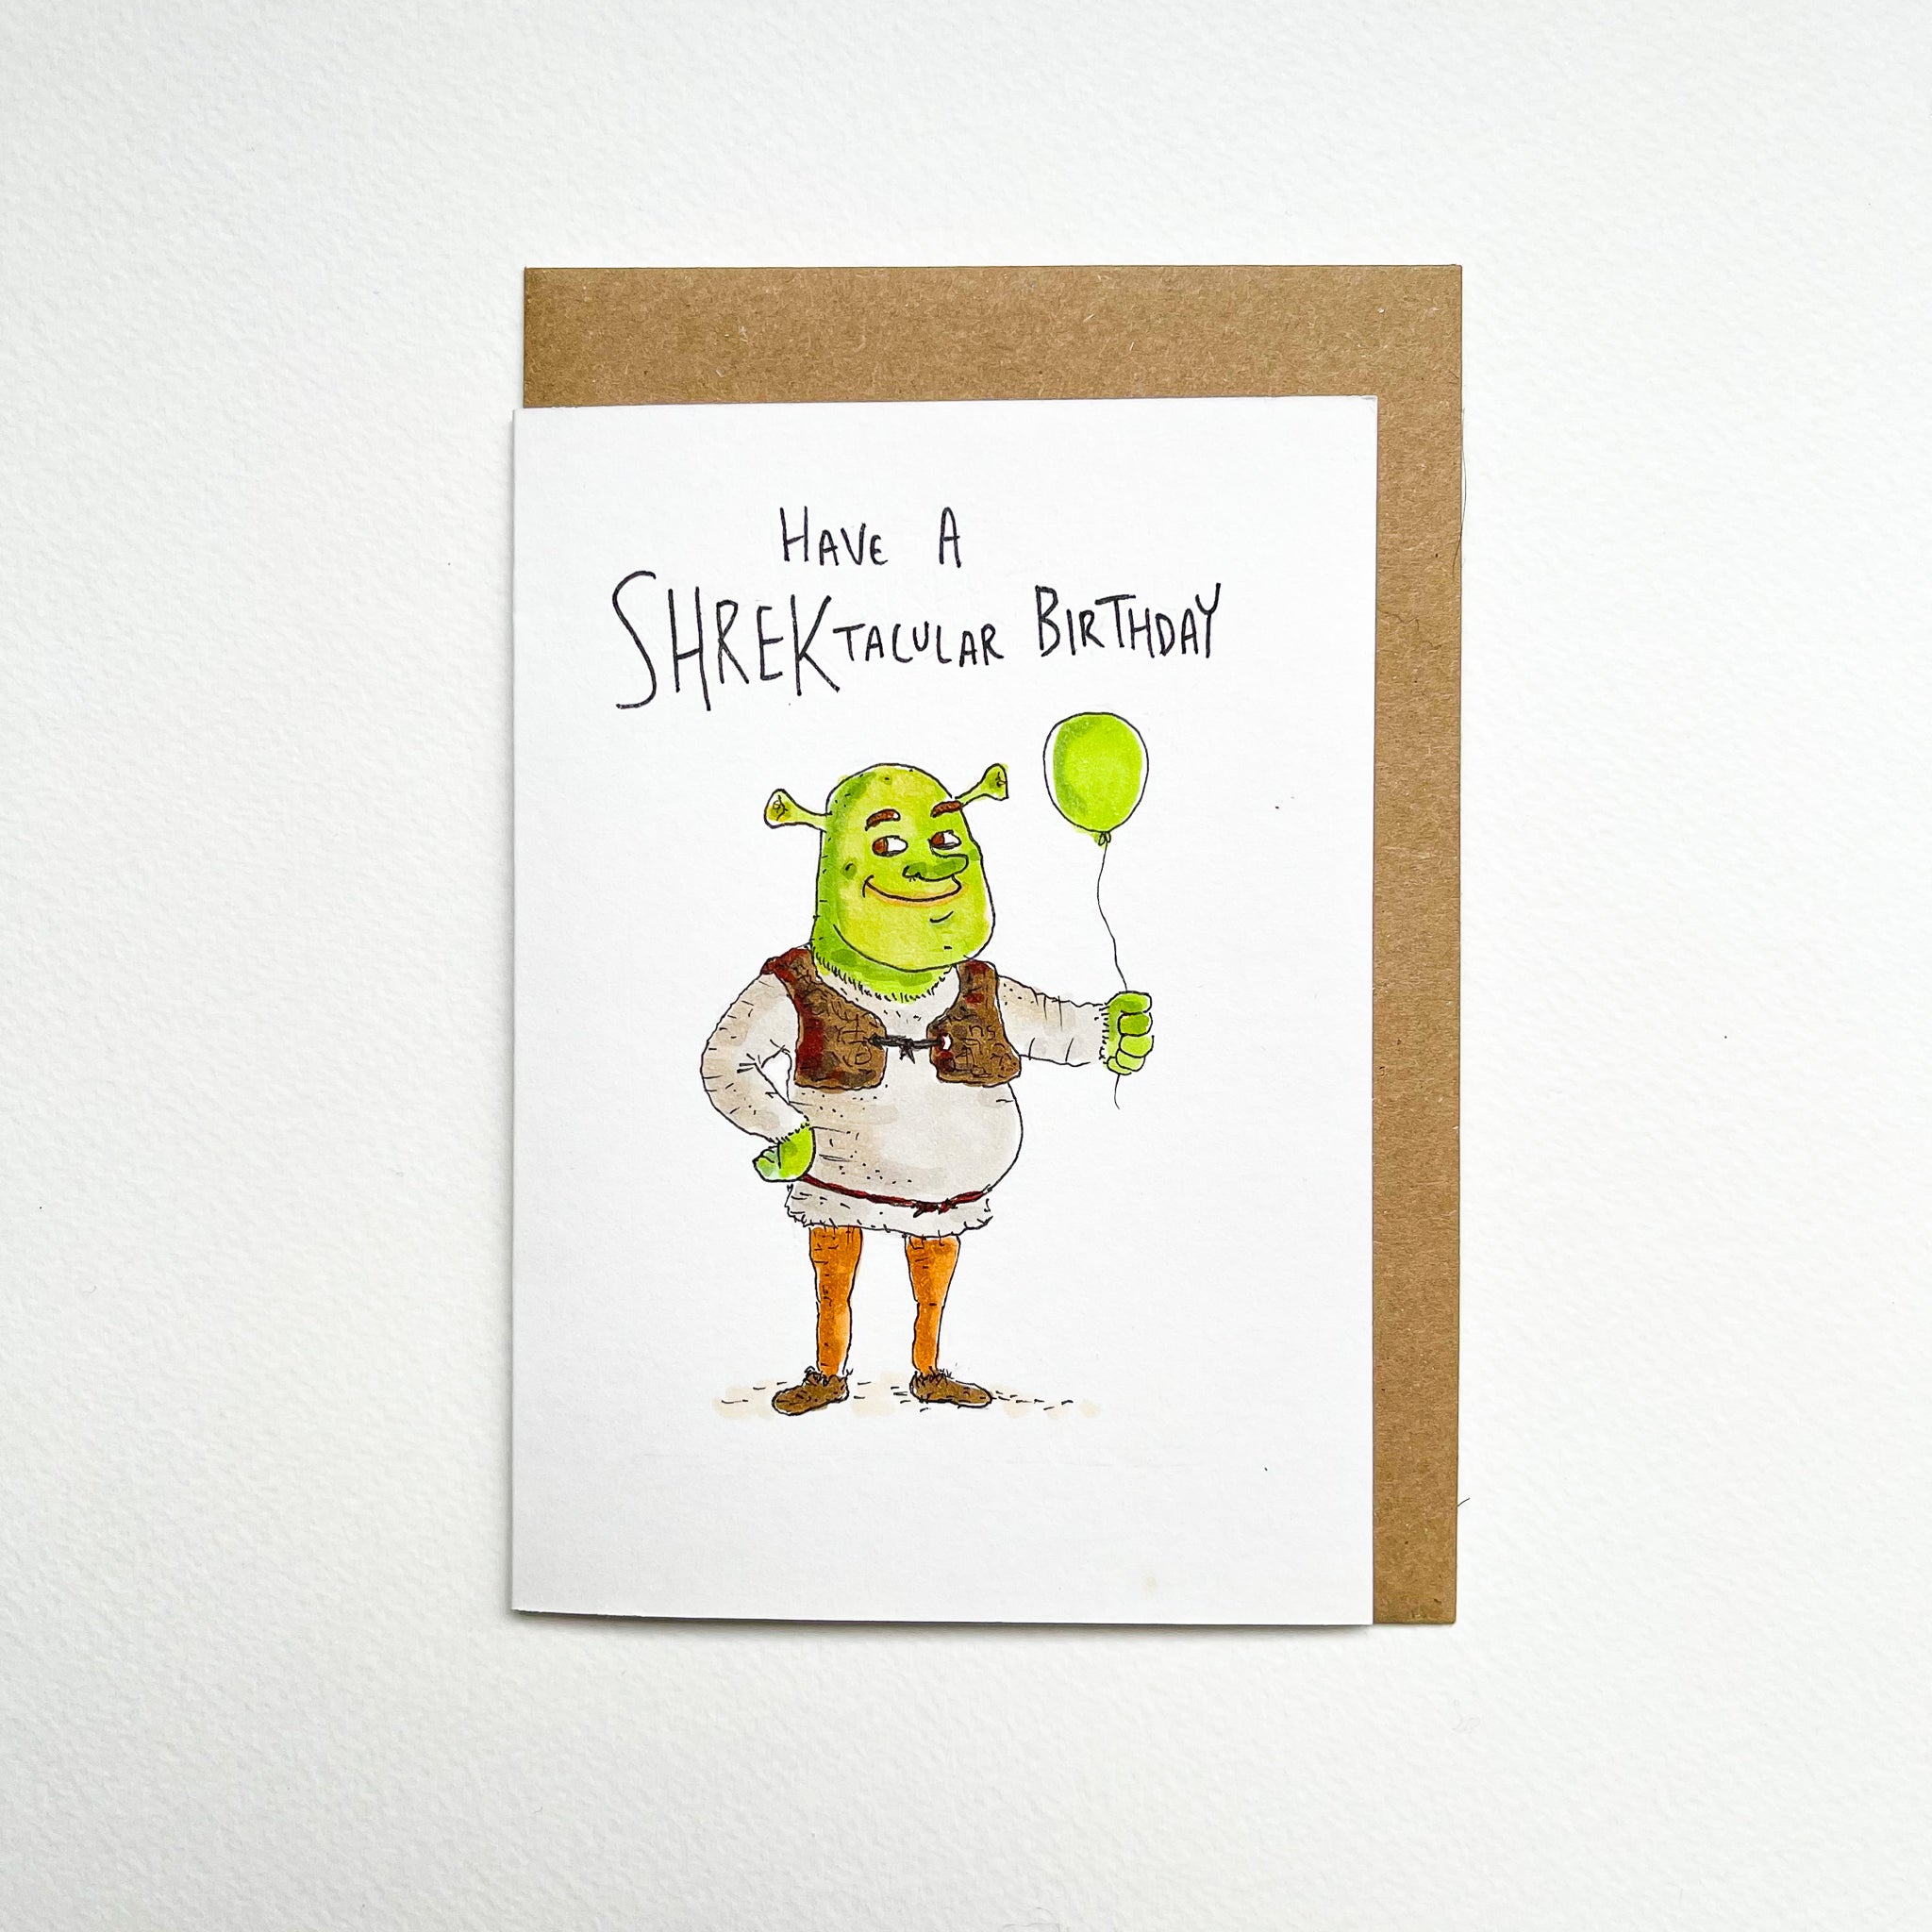 Have a Shrektacular Birthday - Well Drawn